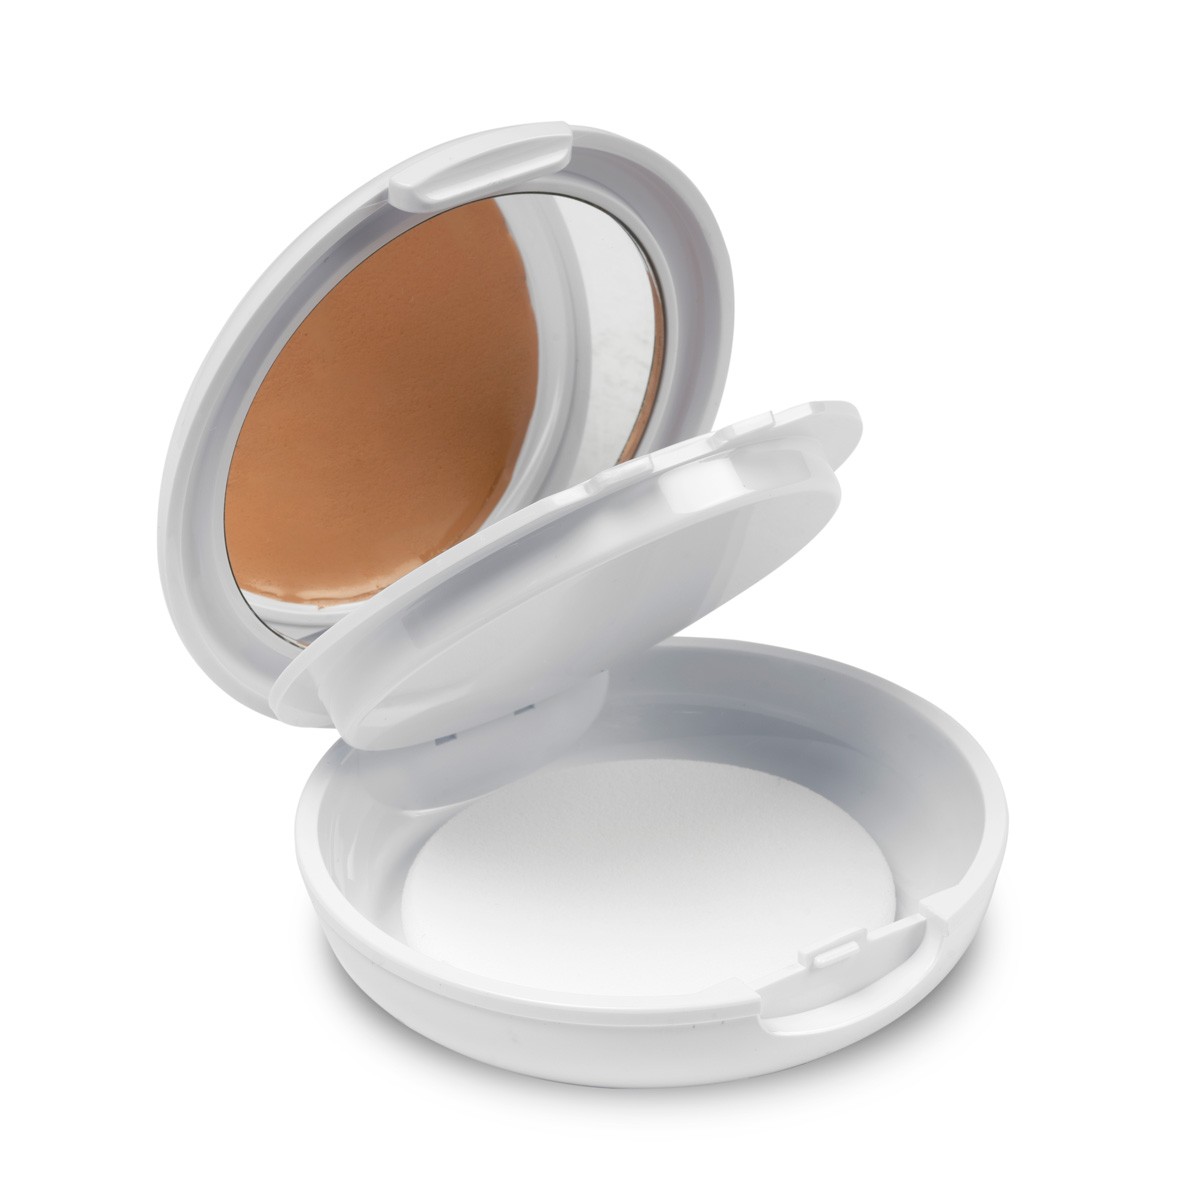 Interapothek maquillaje con protección solar spf50+ tono bronceado